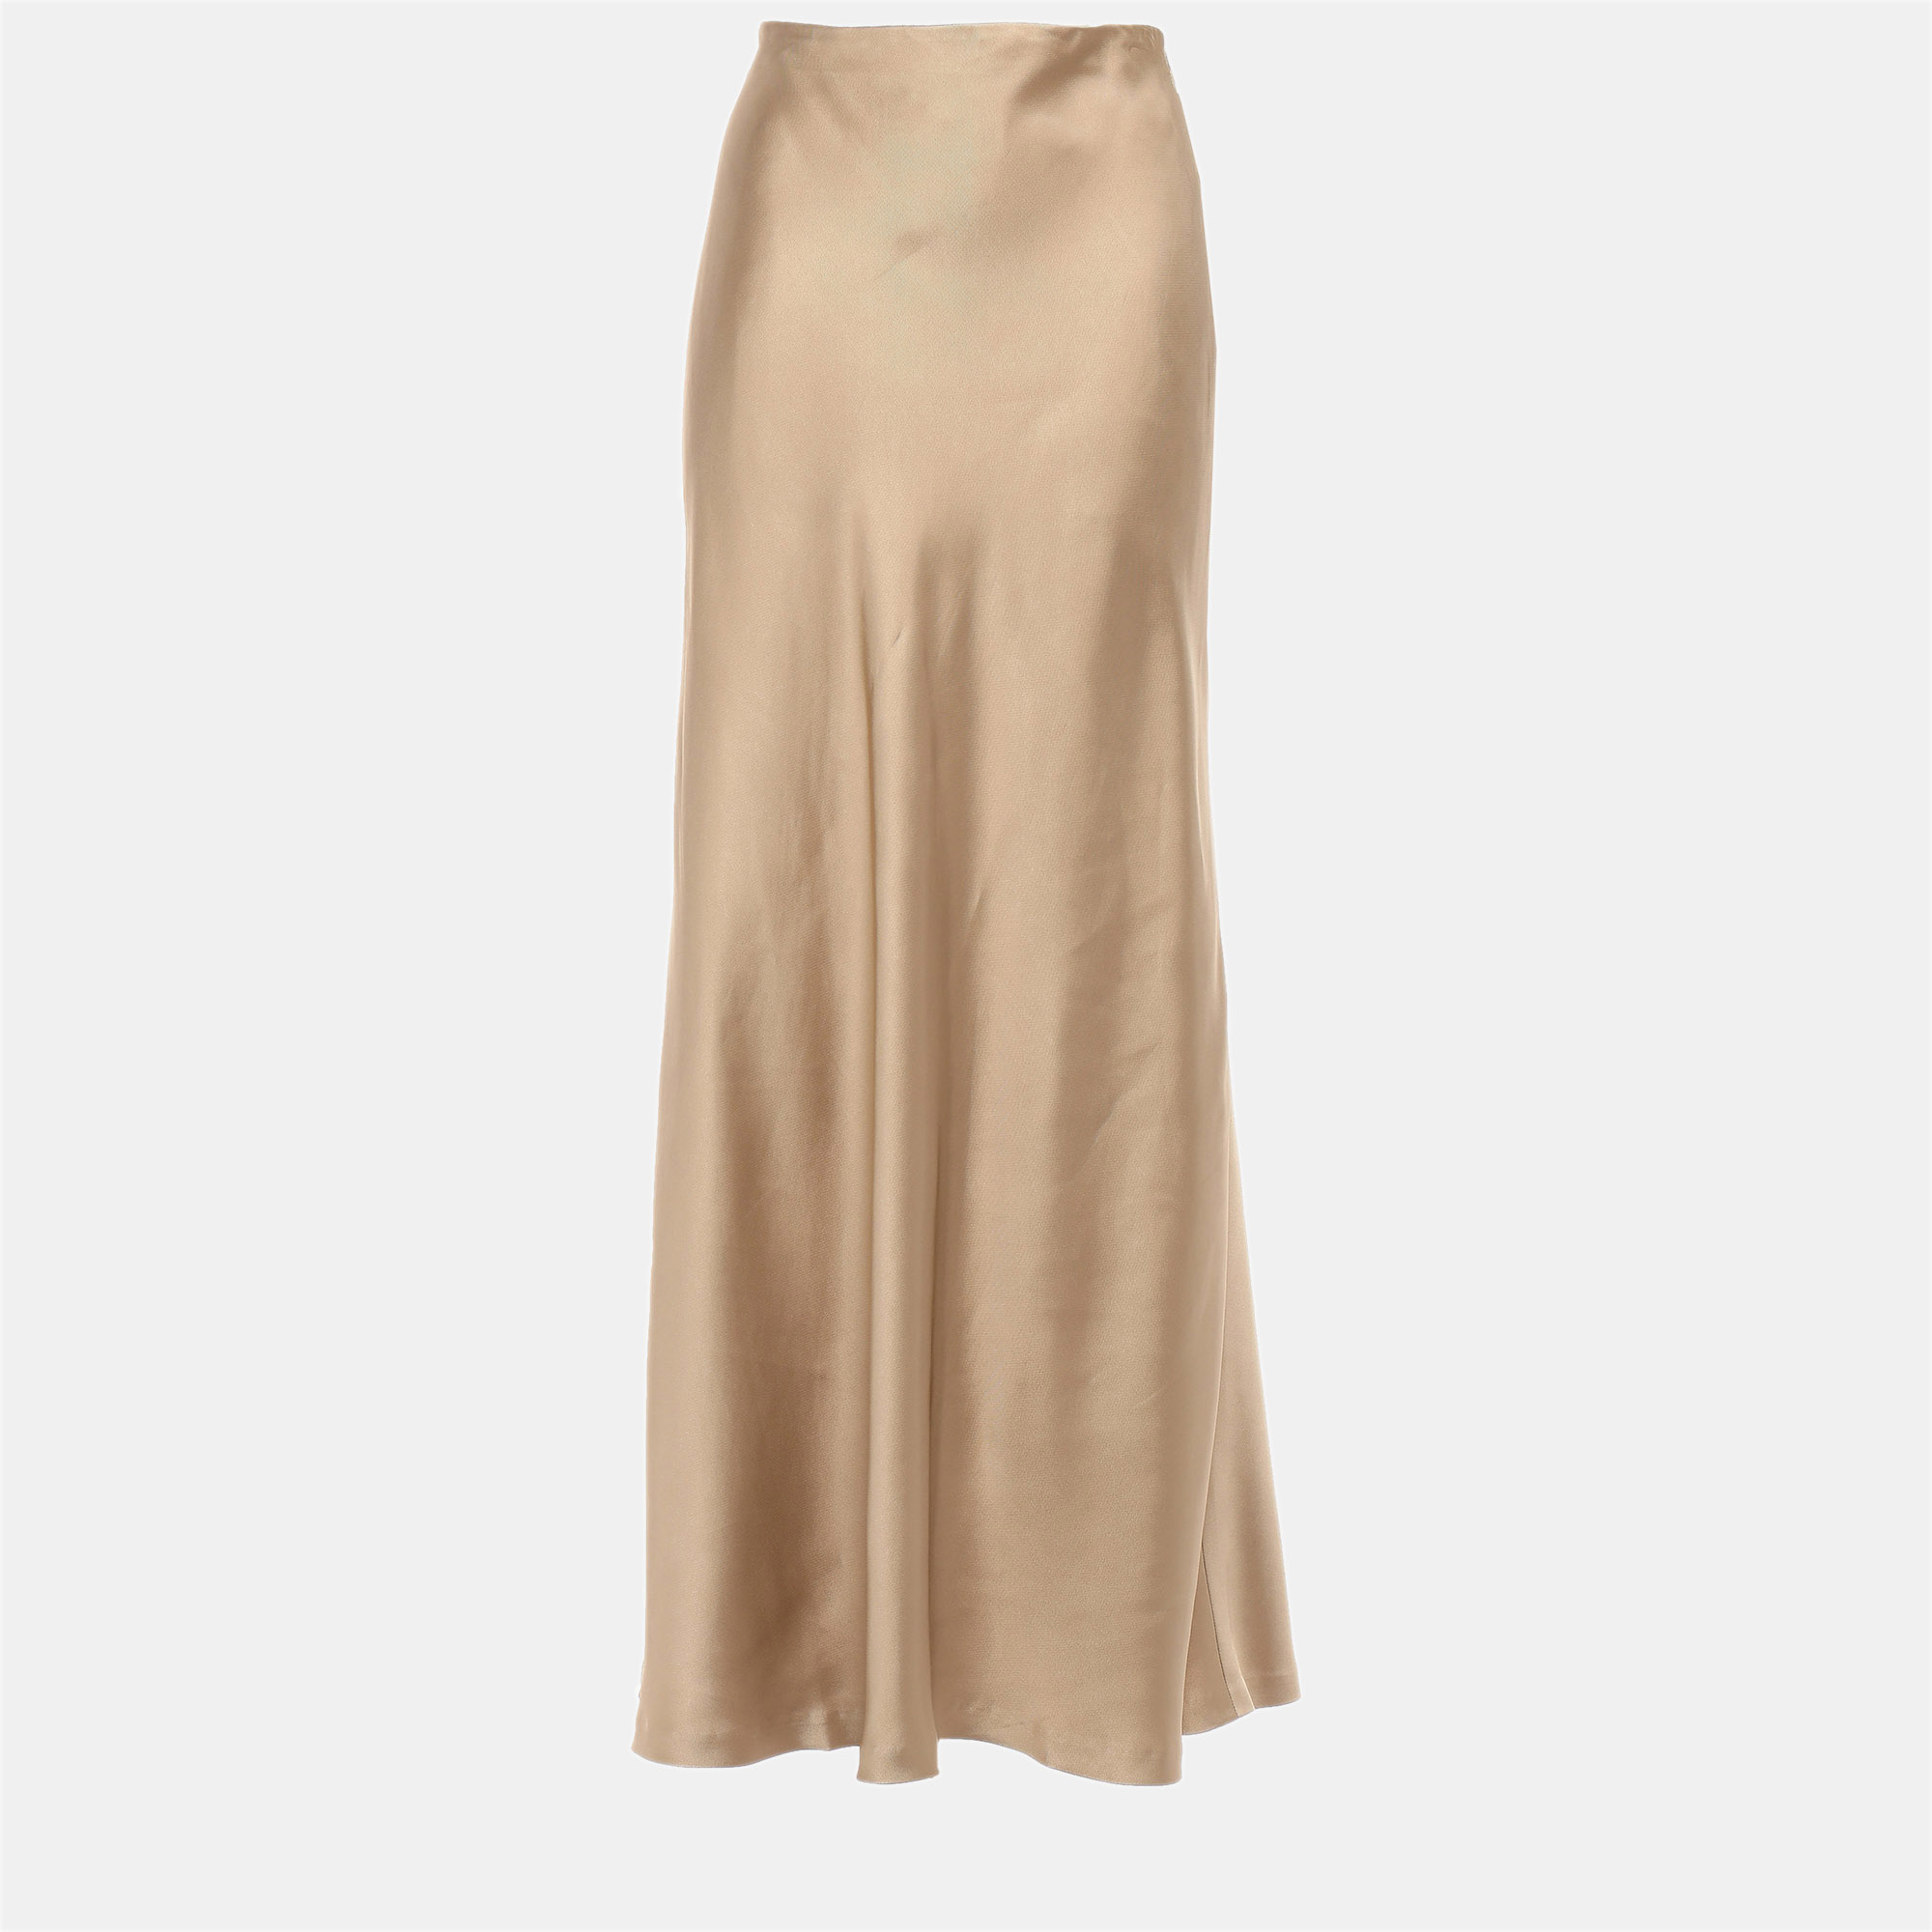 Zimmermann gold viscose maxi skirt size s (1)